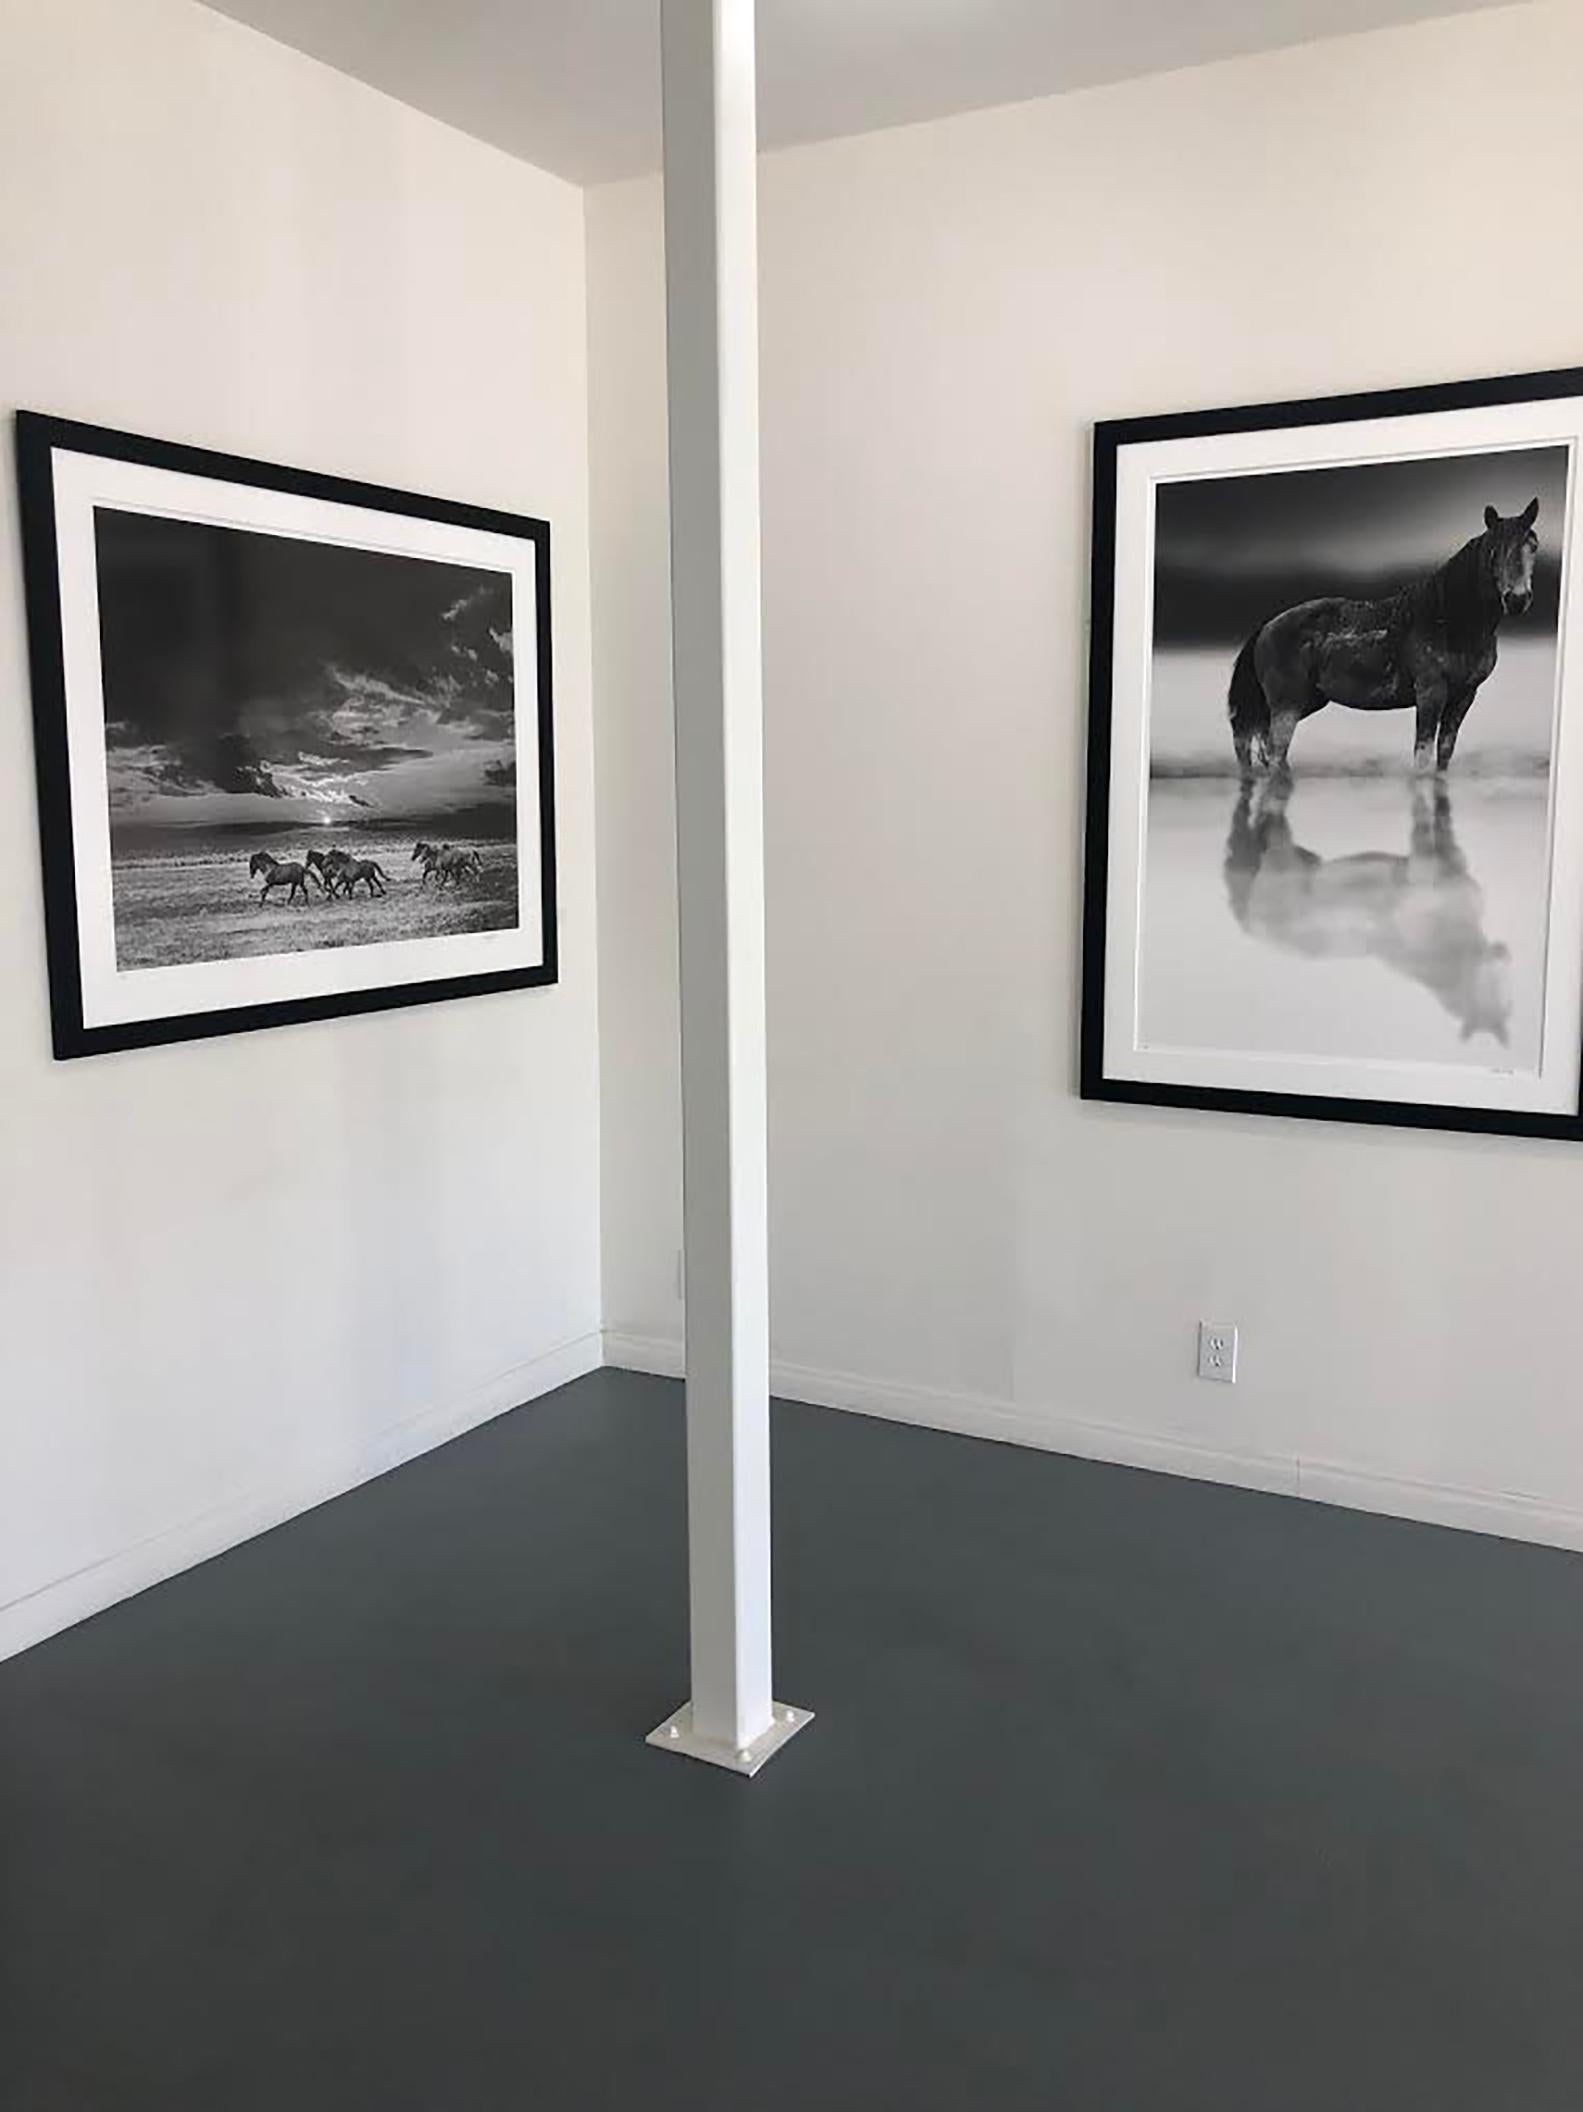 Il s'agit d'une photographie contemporaine en noir et blanc de Mustangs sauvages de Californie du Nord. 
